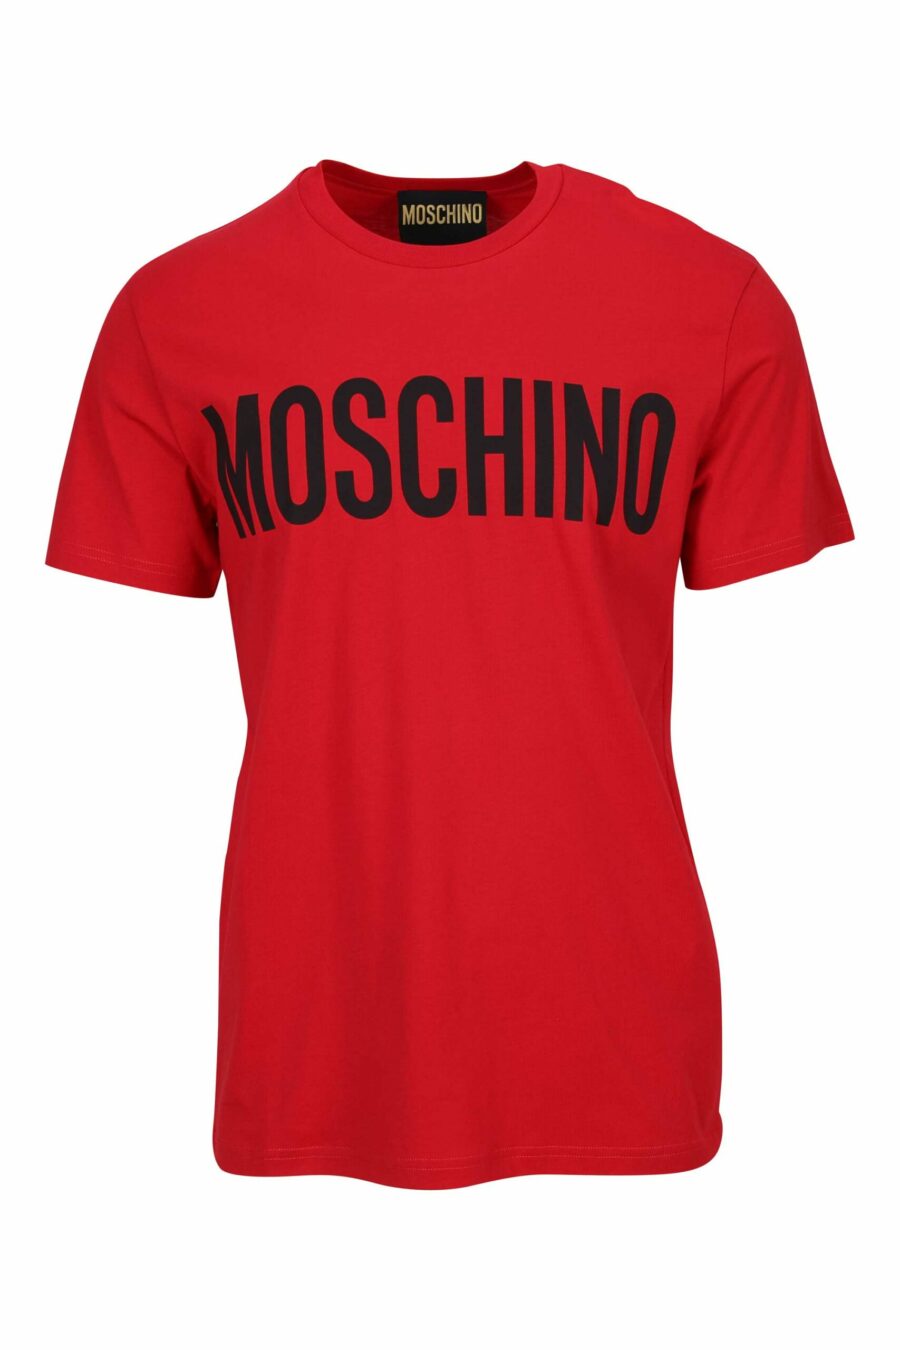 Camiseta roja "oversize" de algodón orgánico con maxilogo negro clásico - 667113751856 scaled